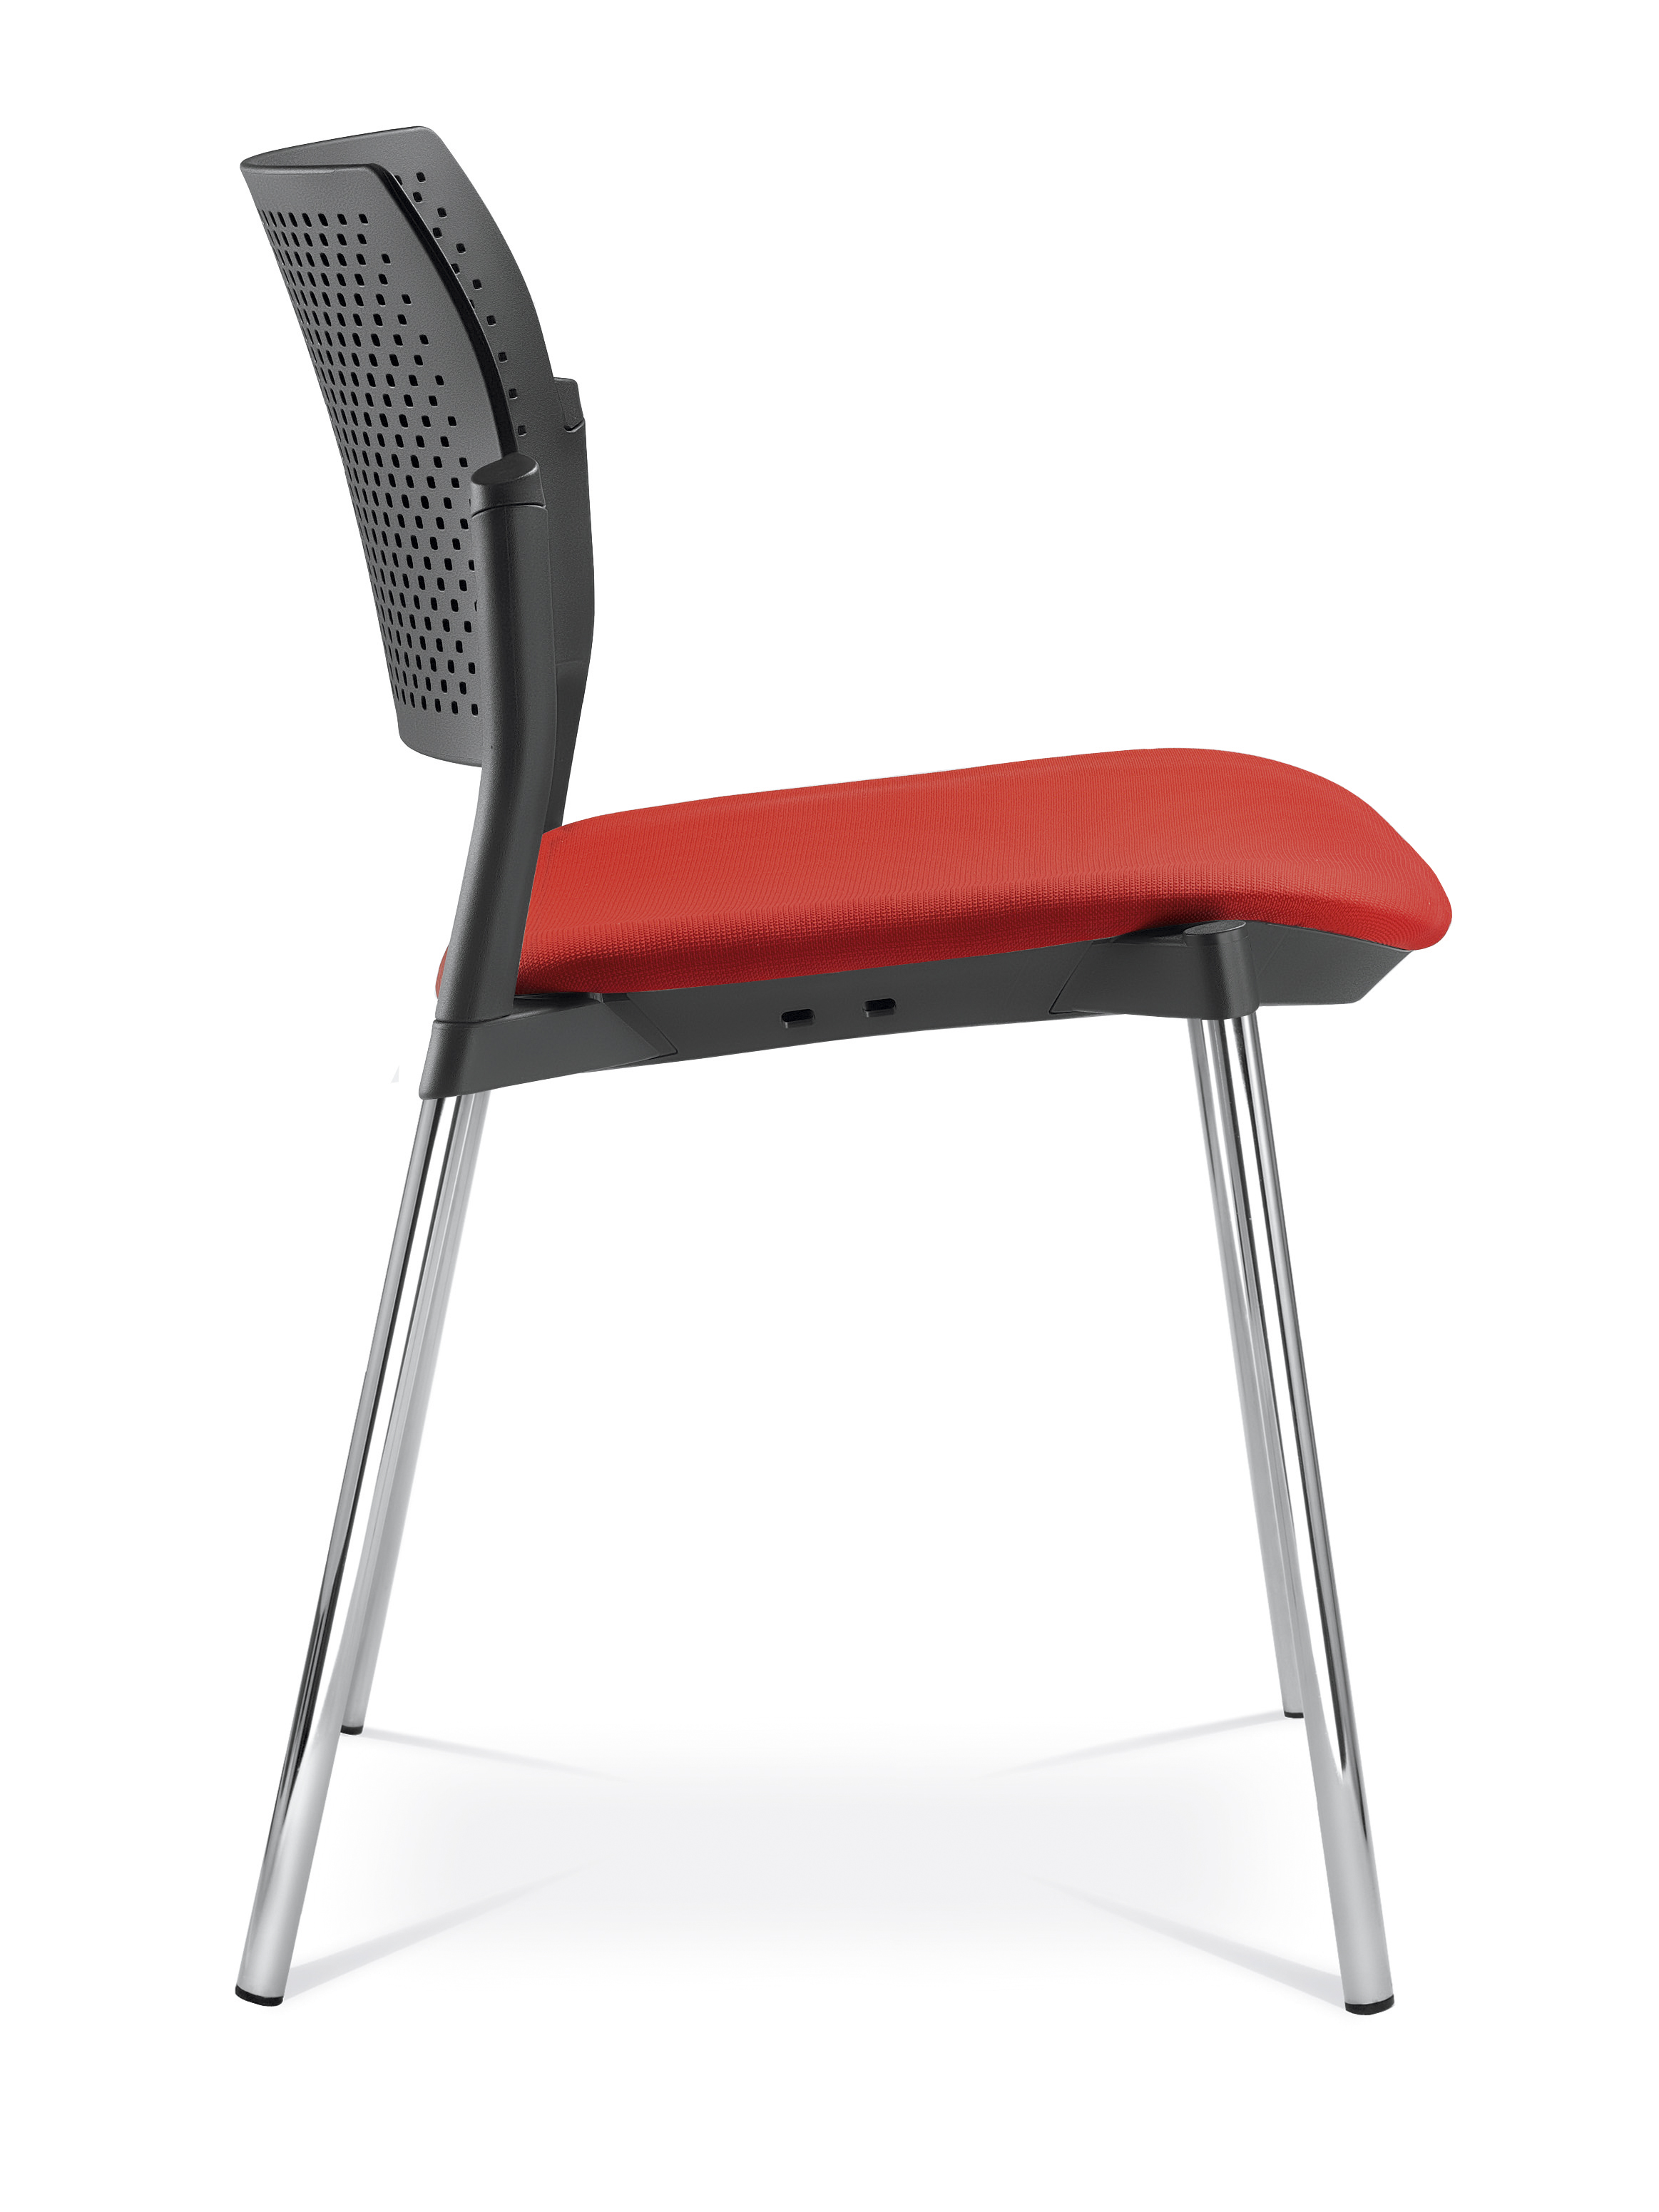 Dream+ Konferenzstuhl mit/ohne Armlehnen (Sitz gepolstert, 4-Fuß-Gestell)